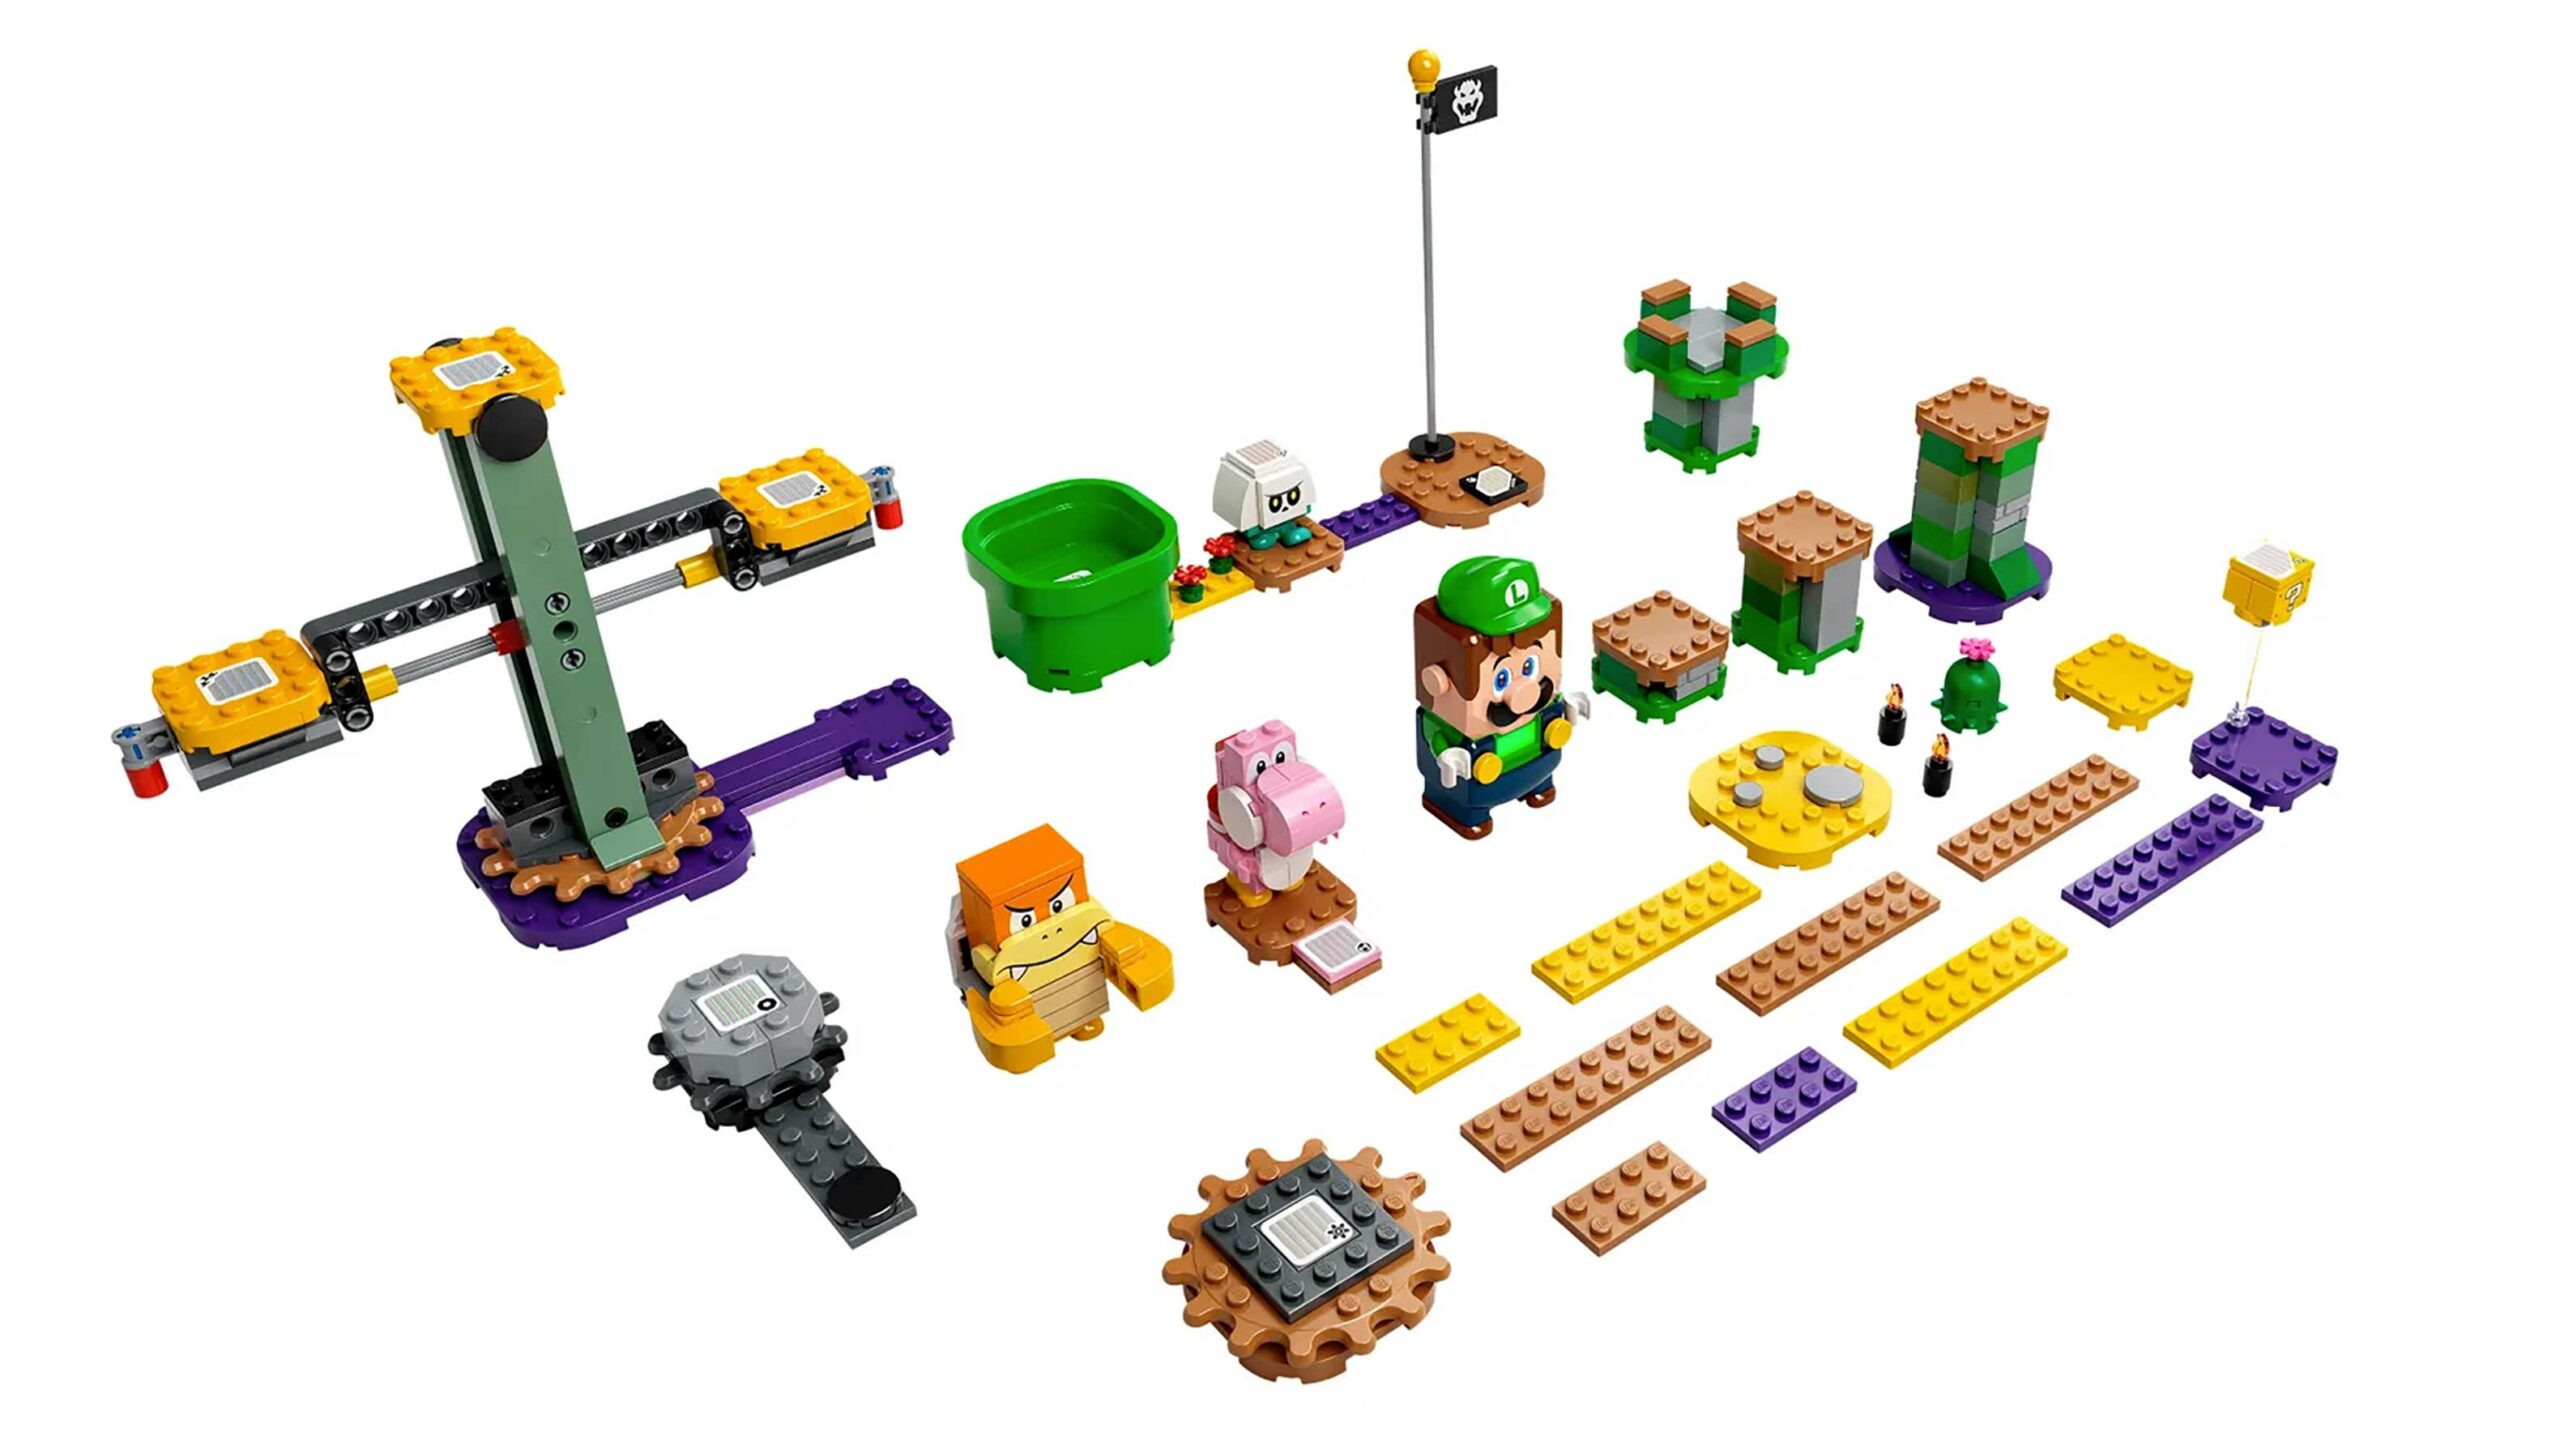 Luigi Lego set